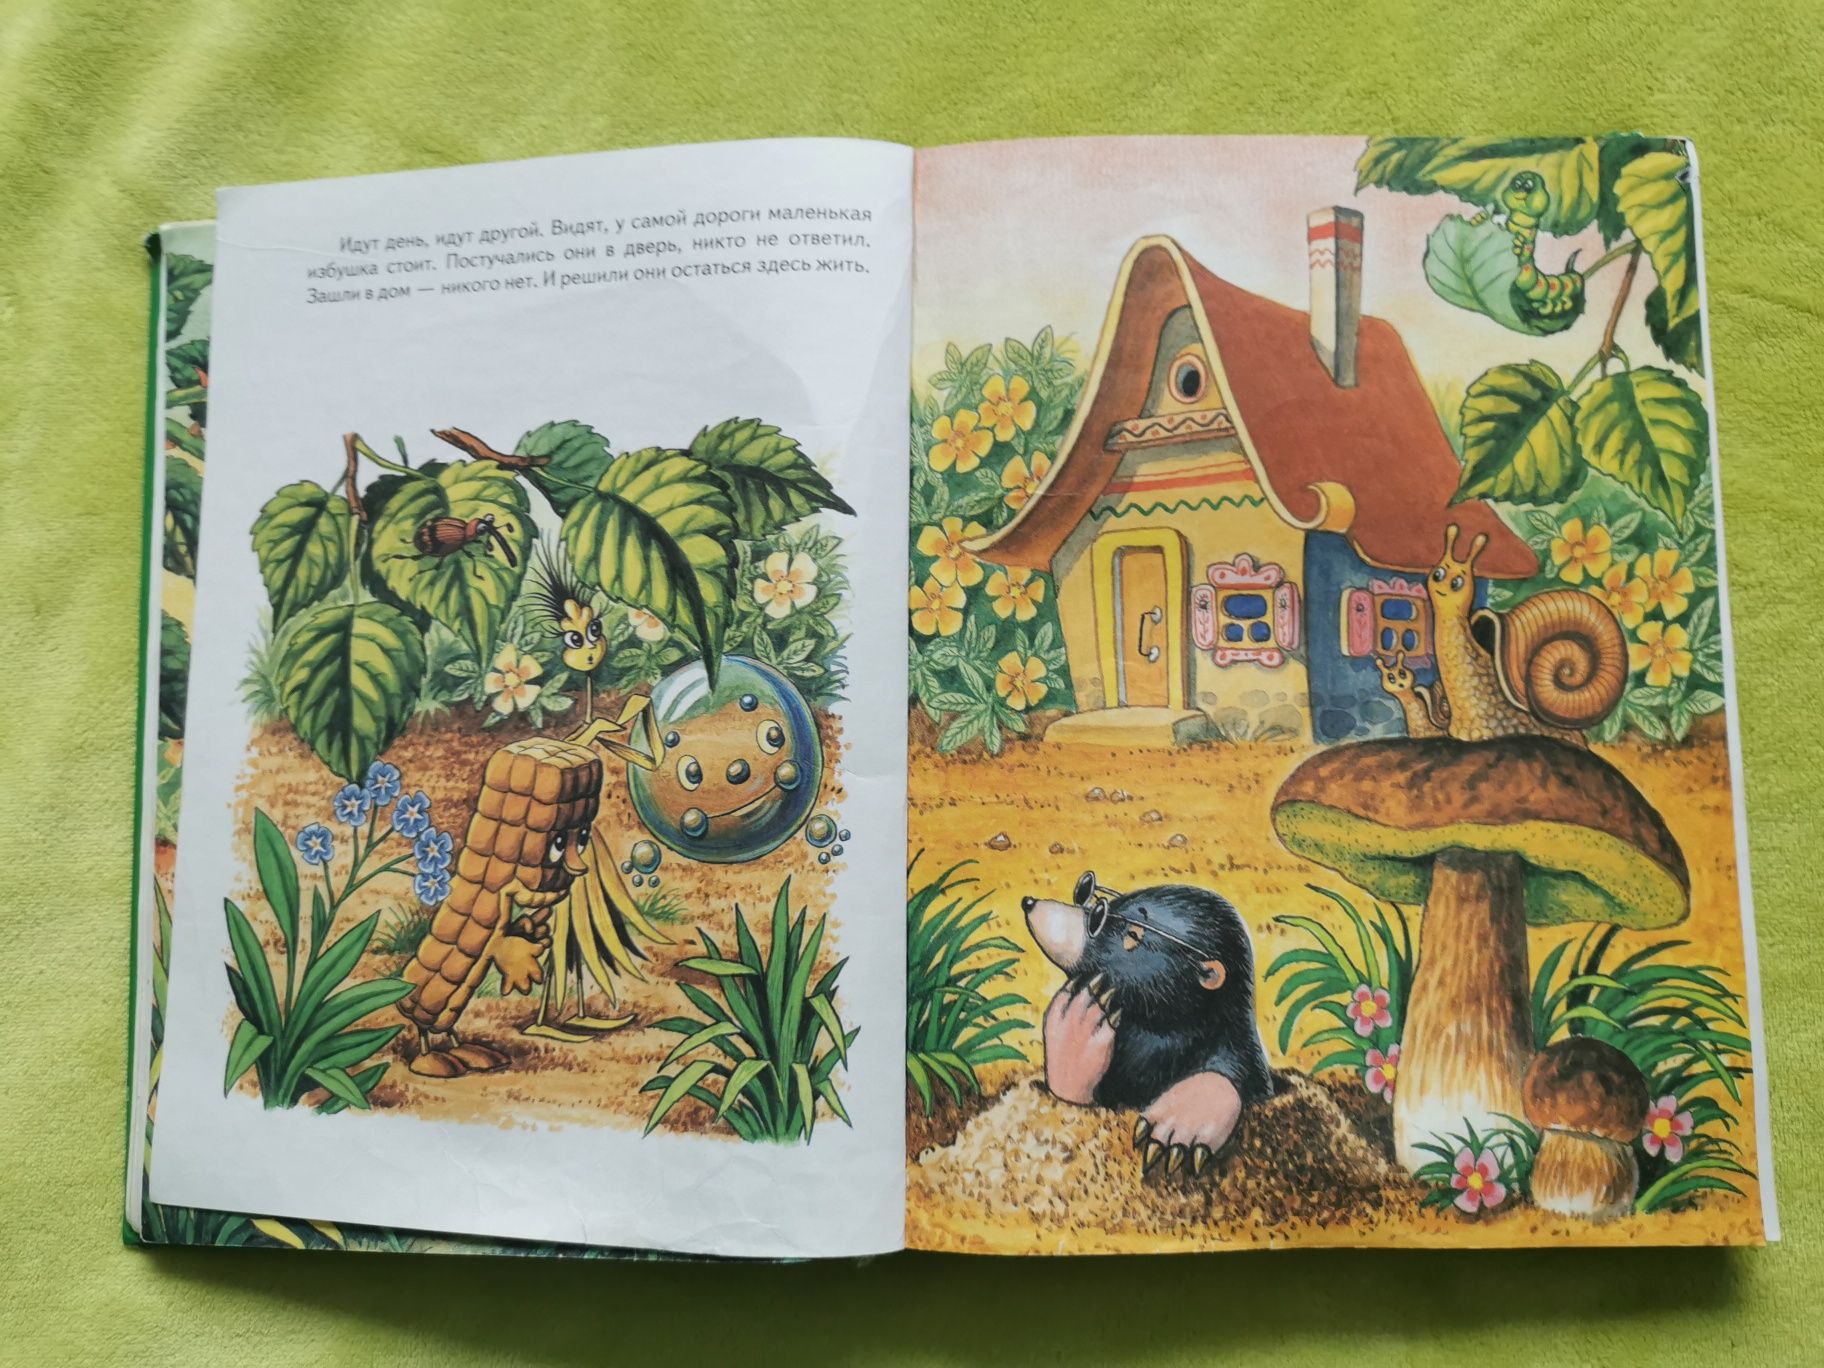 Мои первые сказки казки дитячі детские книги книжки для дітей